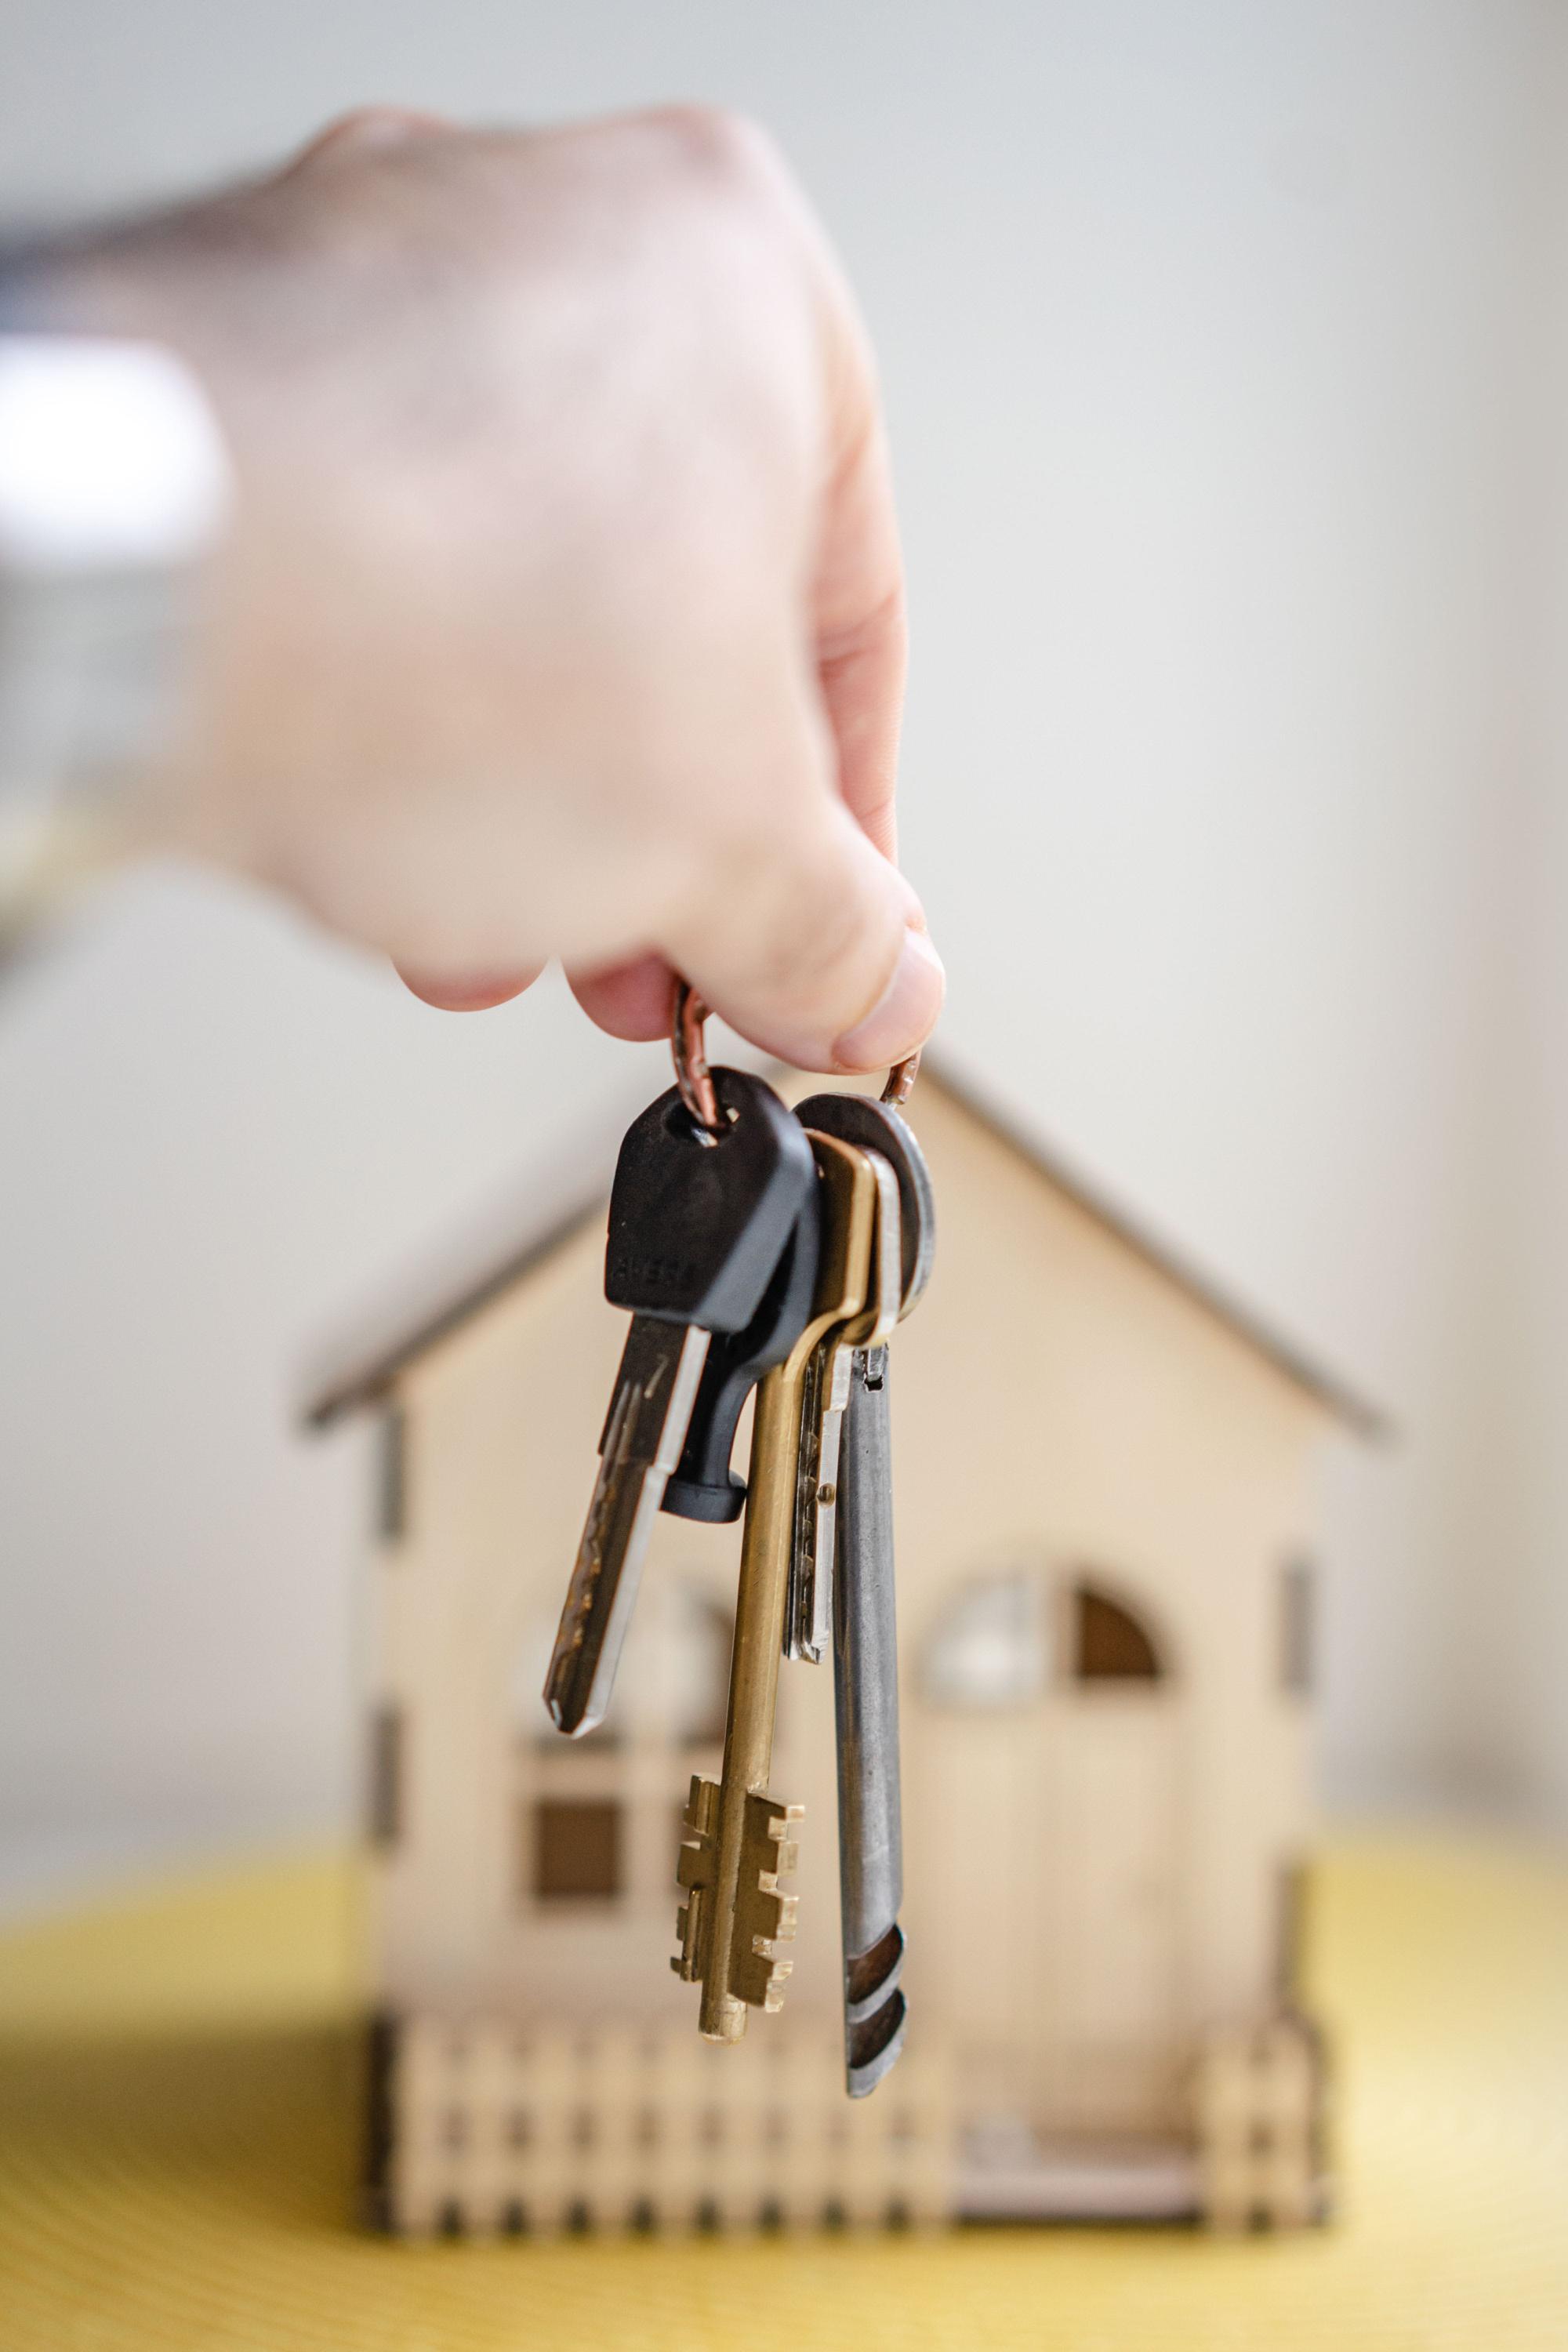 Kluczowe aspekty prawne przy zakupie nieruchomości